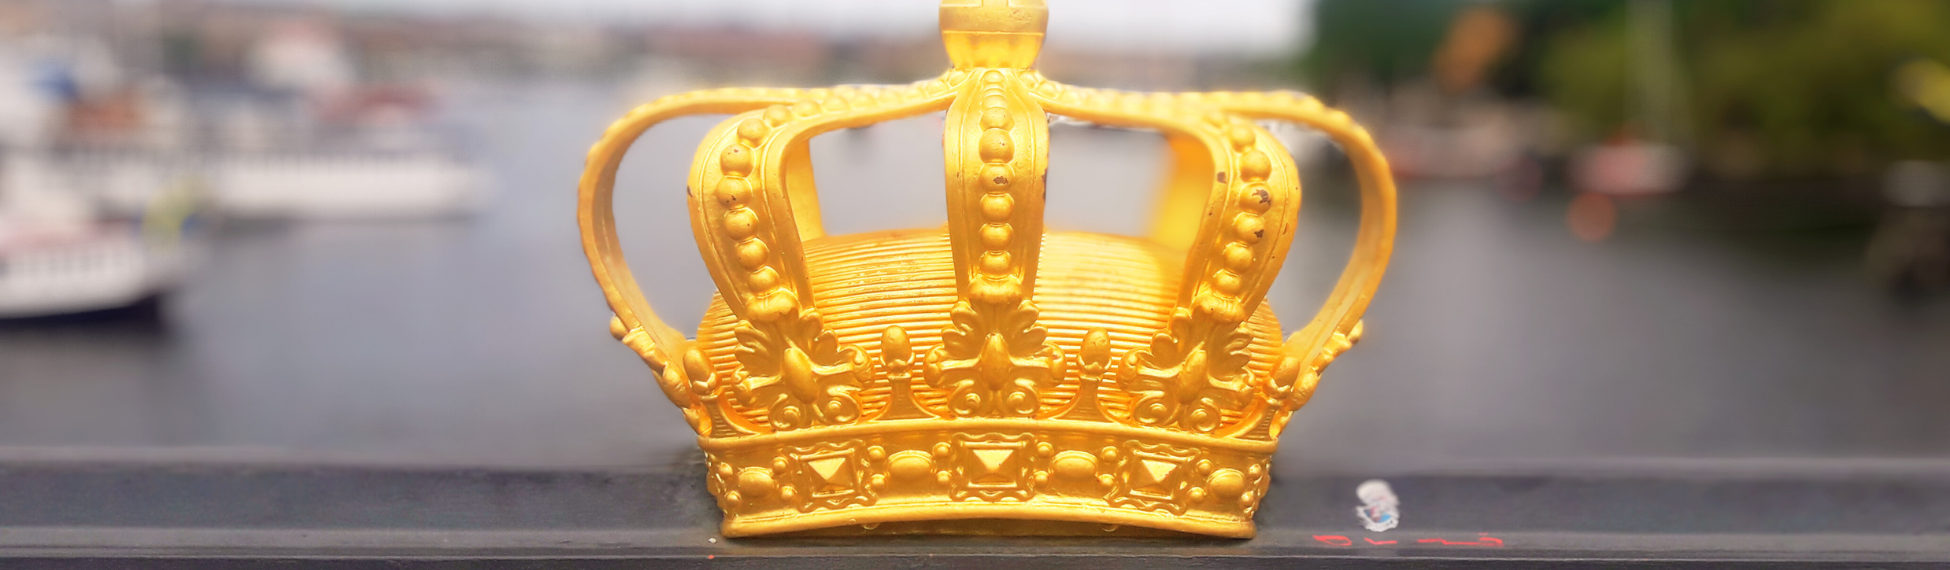 Gyllene krona